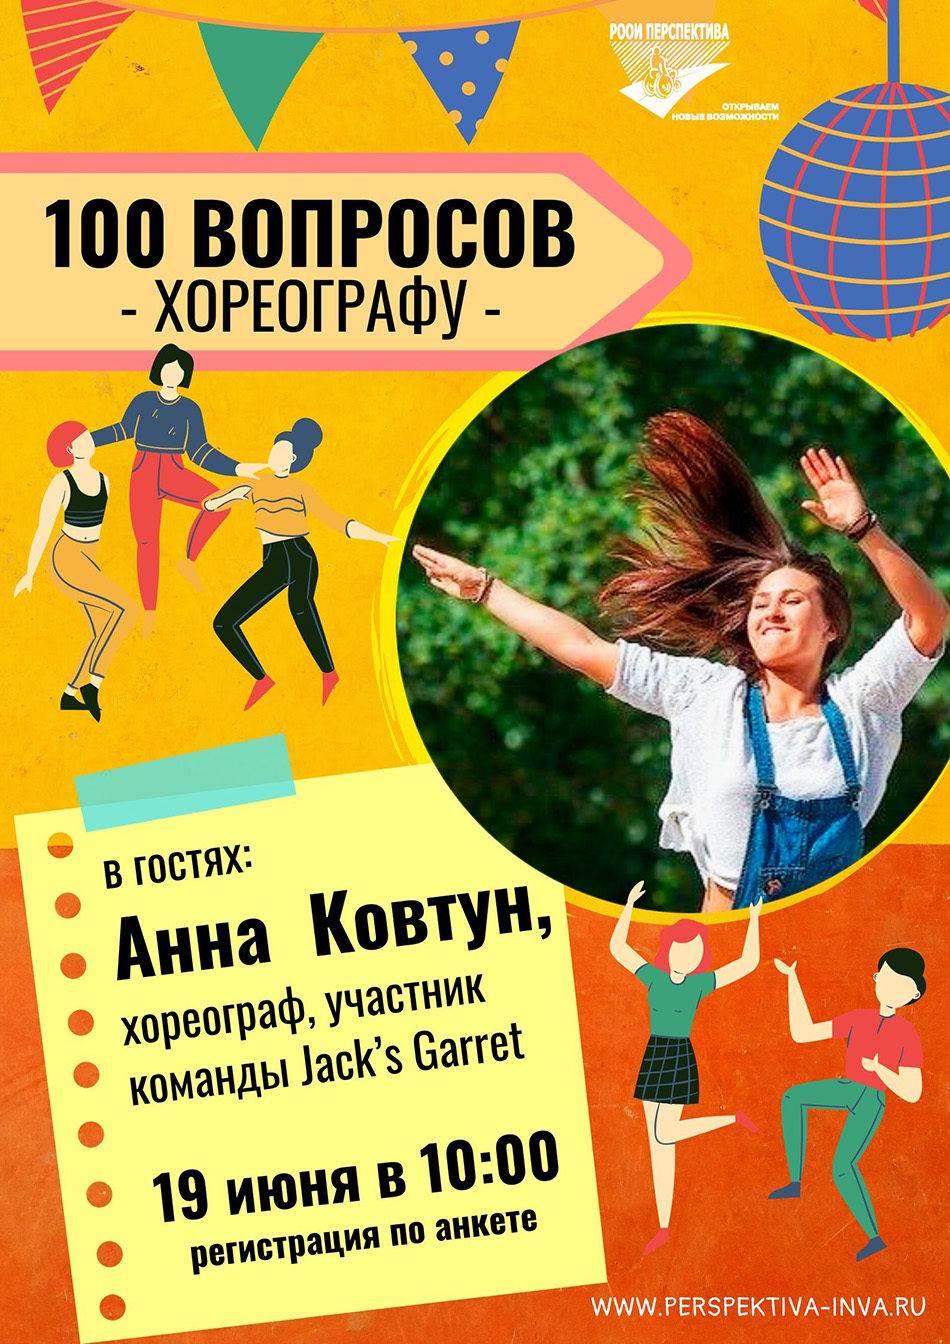 «100 вопросов профессионалу»: опытом делится хореограф Анна Ковтун